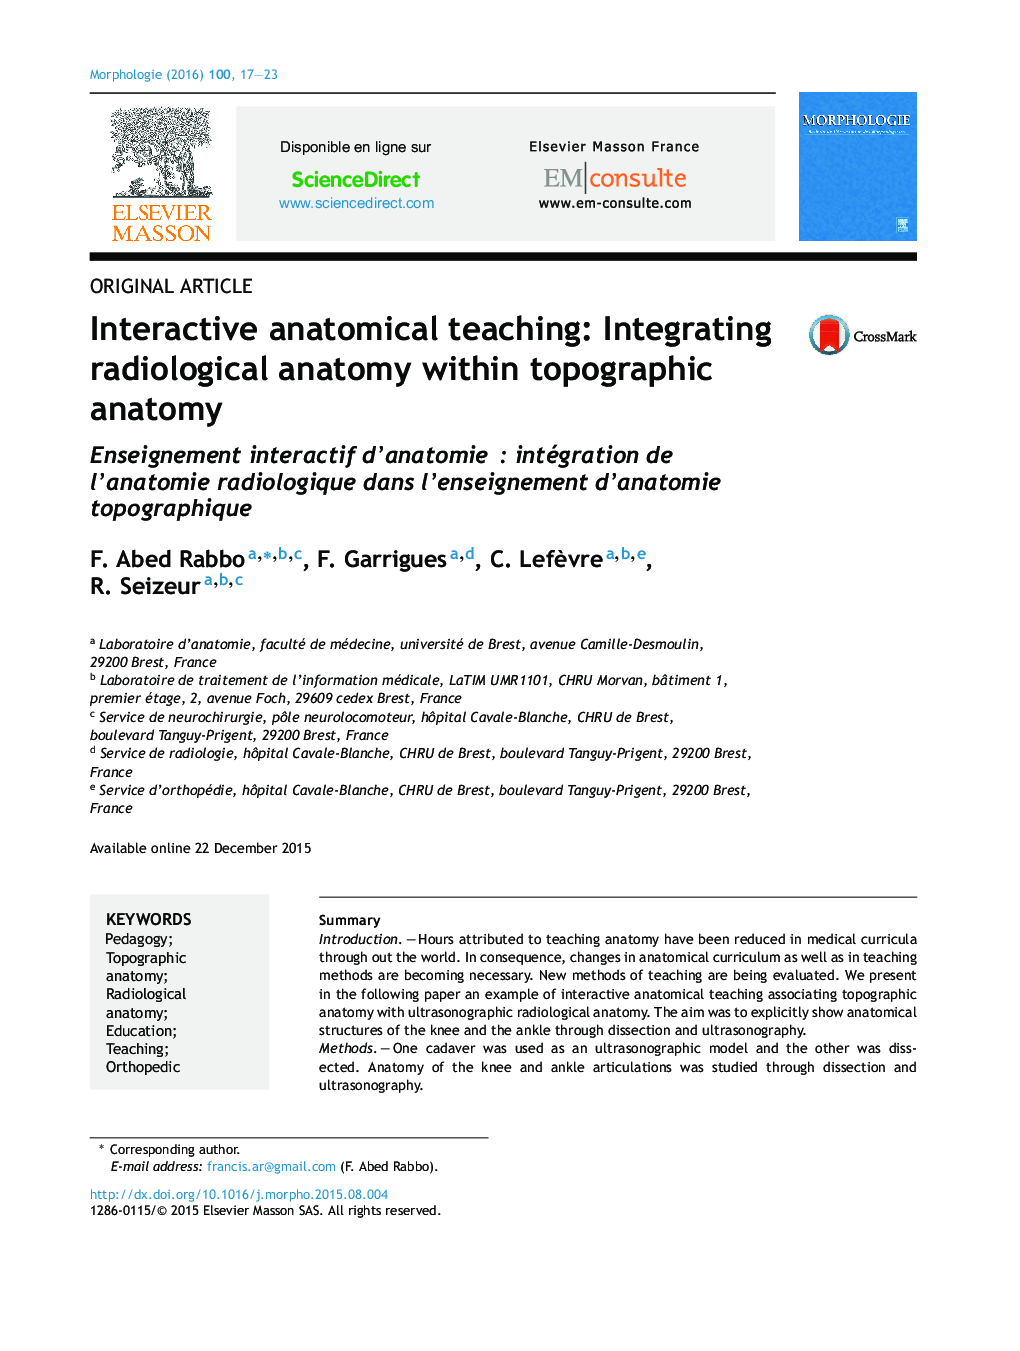 آموزش آناتومی تعاملی: یکپارچه سازی آناتومی رادیولوژیک در آناتومی توپوگرافی 